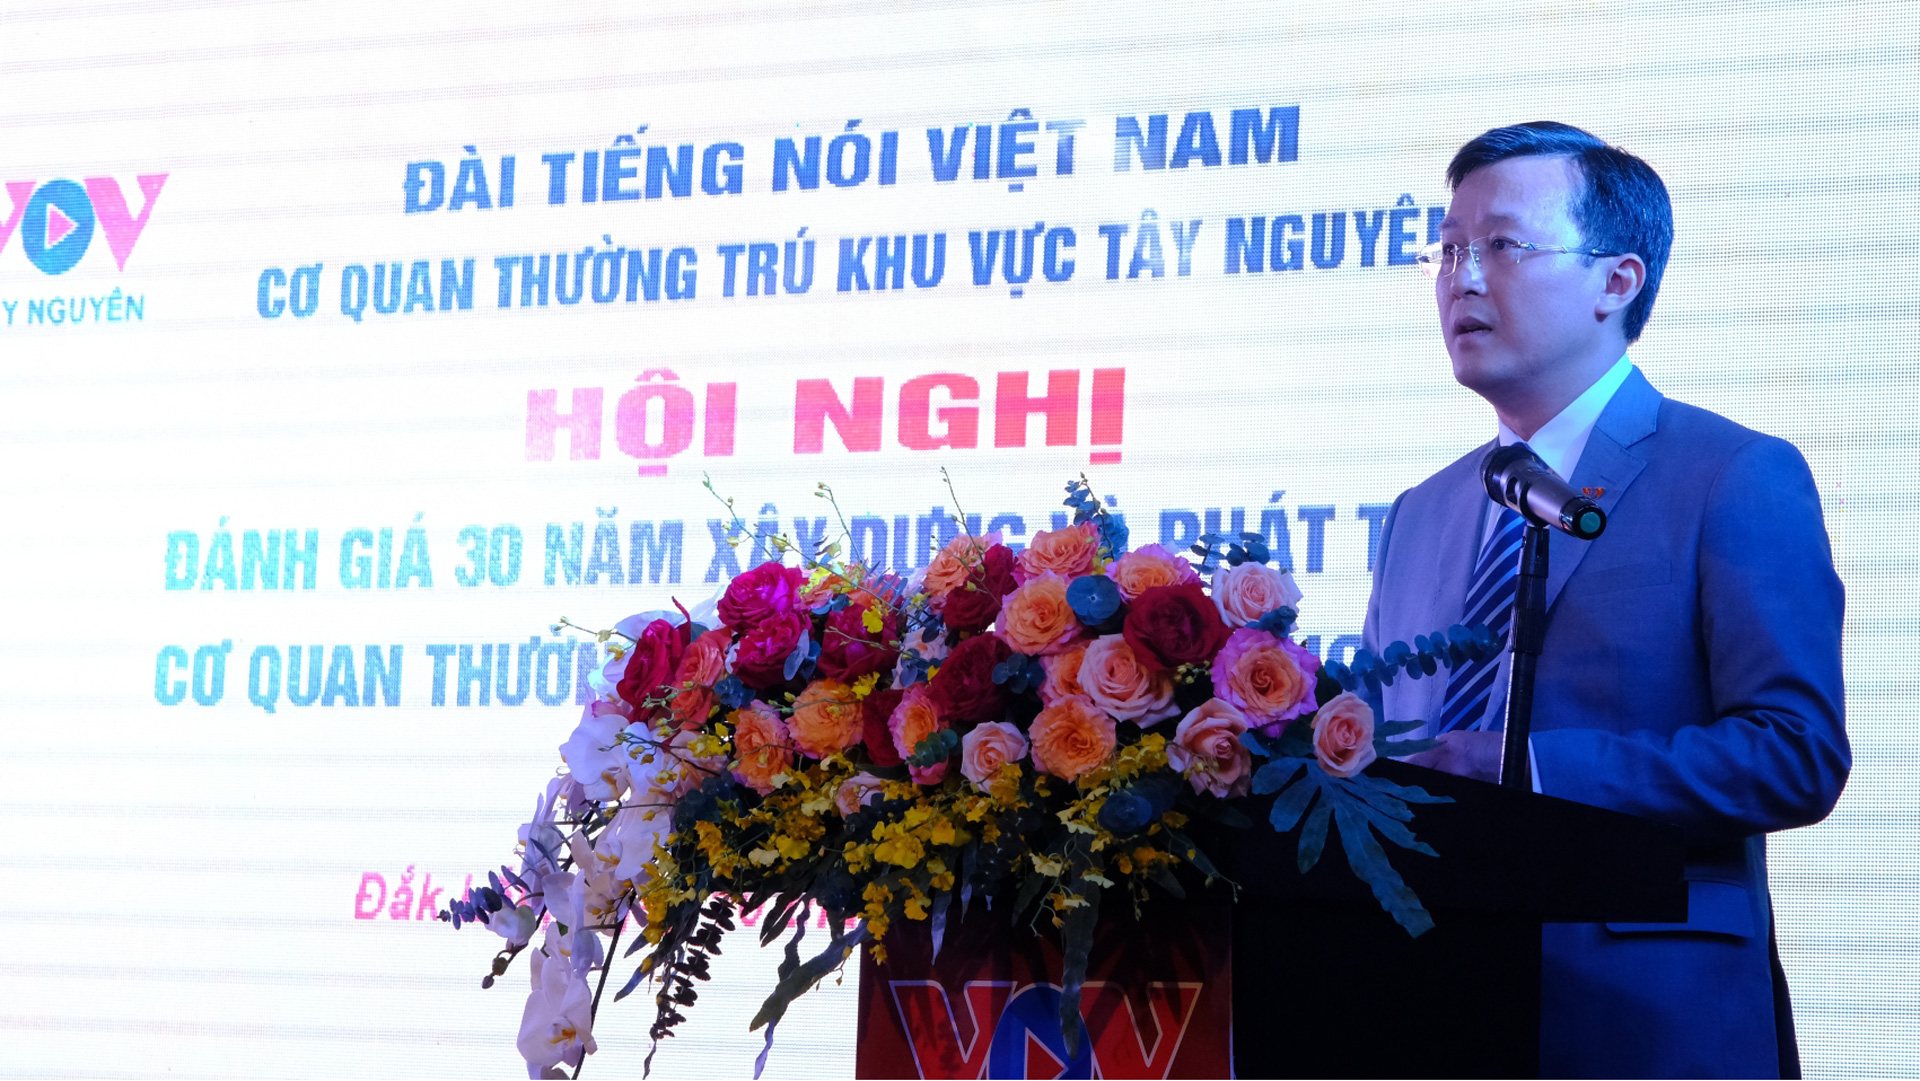 Đồng chí Vũ Hải Định – Giám đốc cơ quan thường trú khu vực Tây Nguyên phát biểu ôn lại truyền thống 30 năm